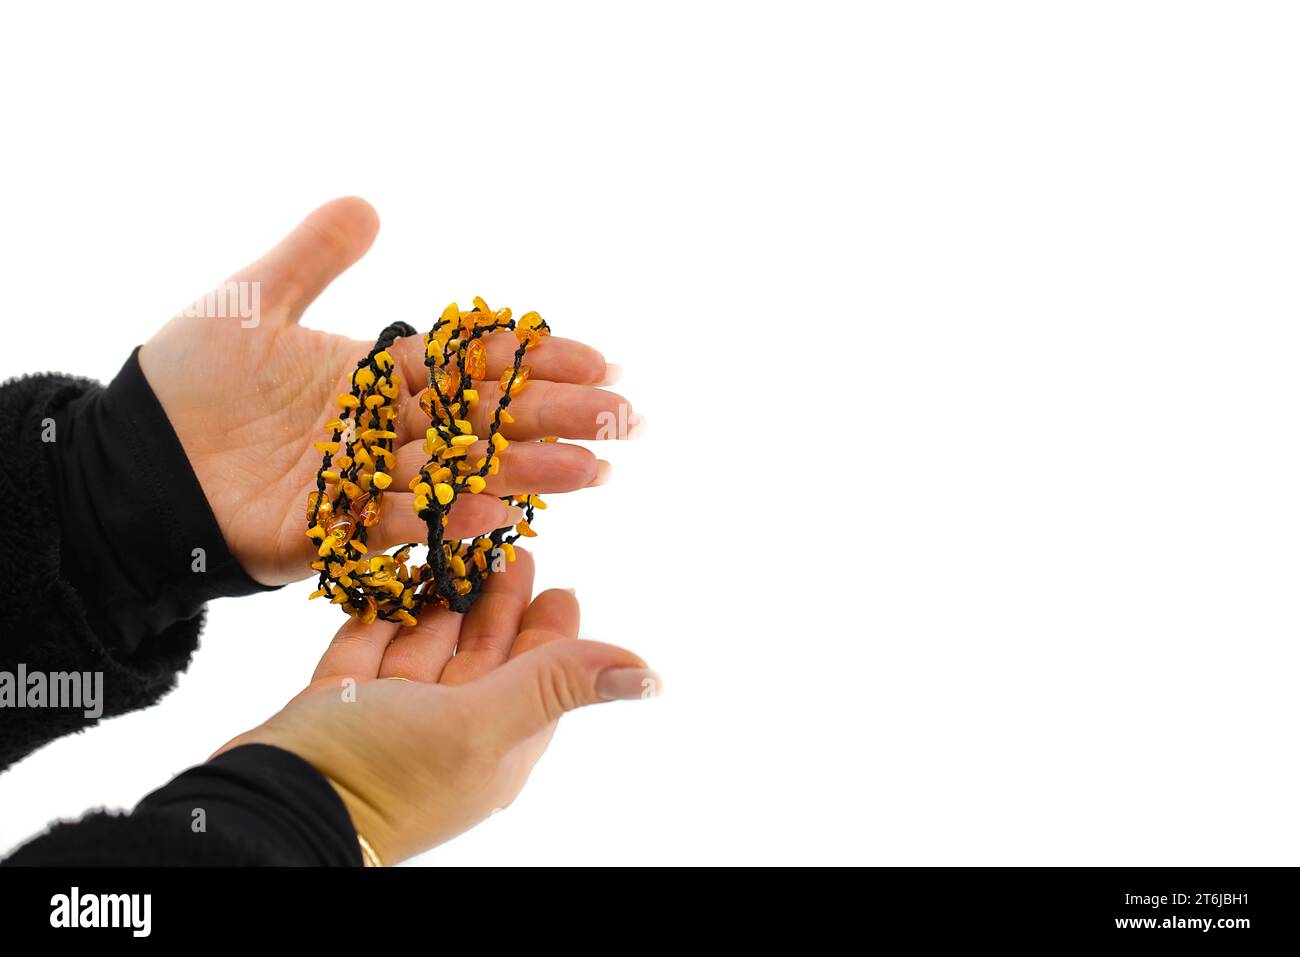 L'immagine presenta una collana ambrata lucida su un cordoncino nero, delicatamente tenuta in mani femminili. Le tonalità dorate contrastano con il nero. Foto Stock